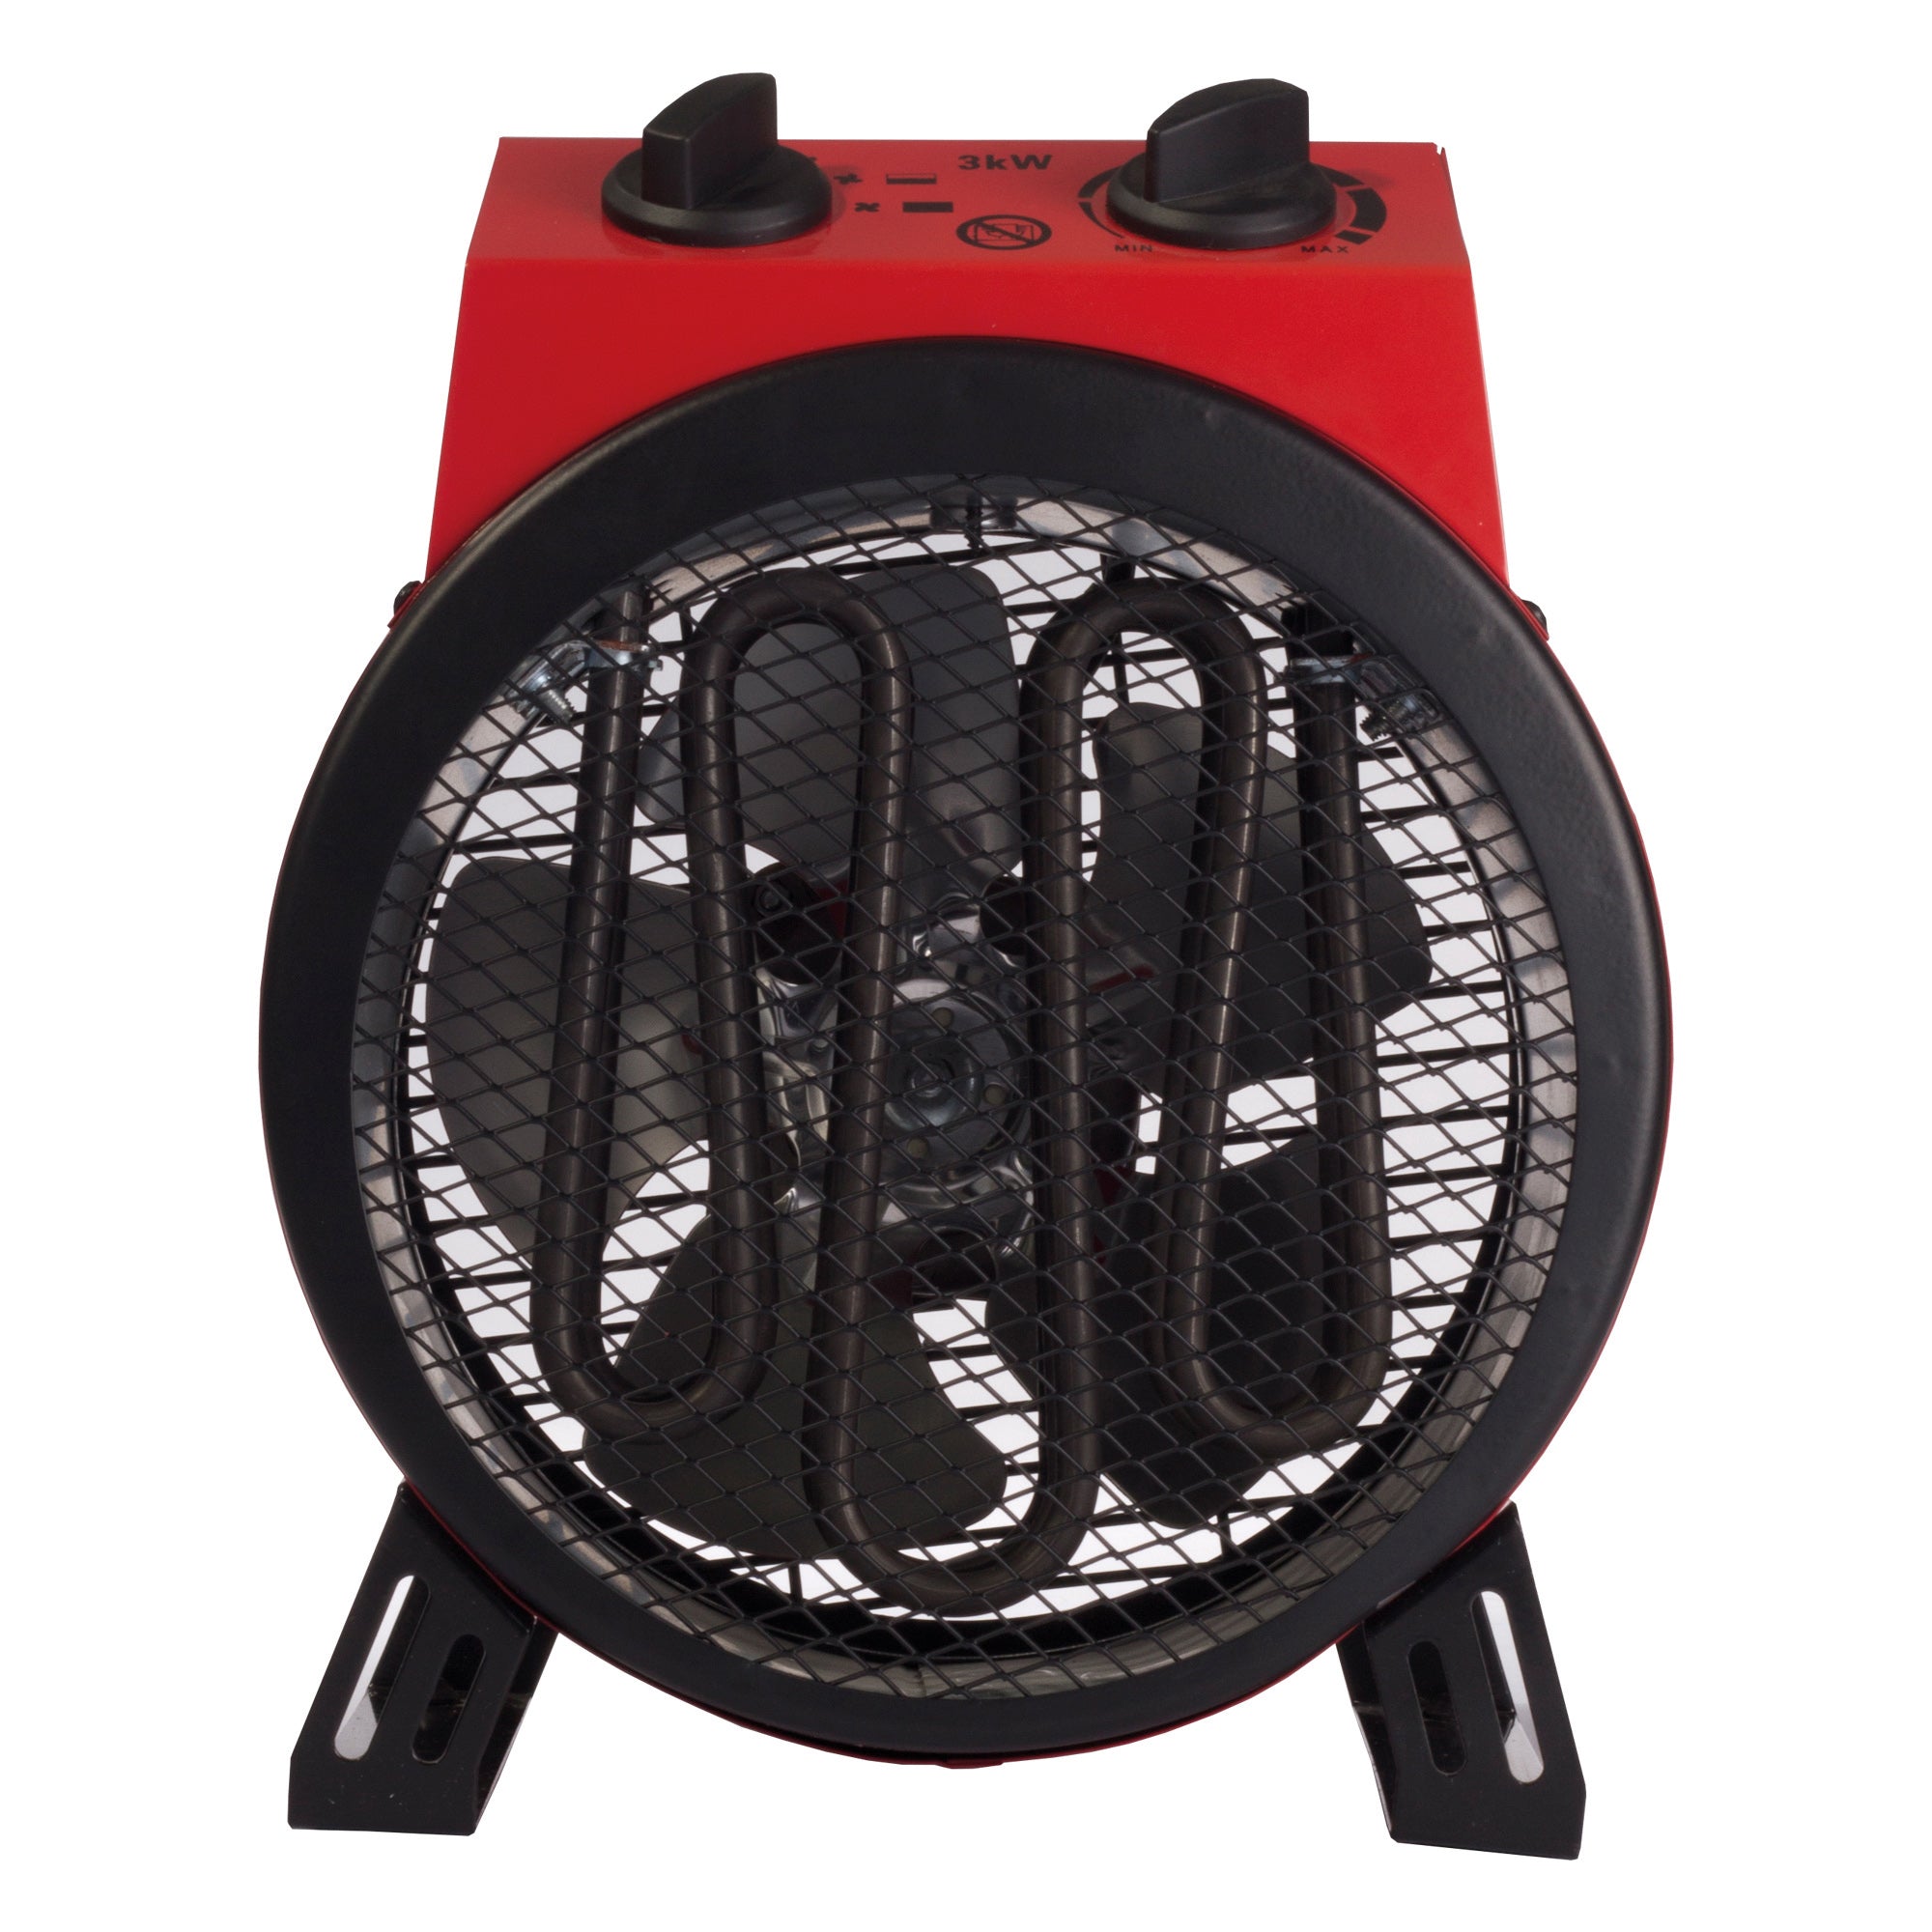 Commercial Drum Fan Heater, 2 Heat Settings, 3000W, Red